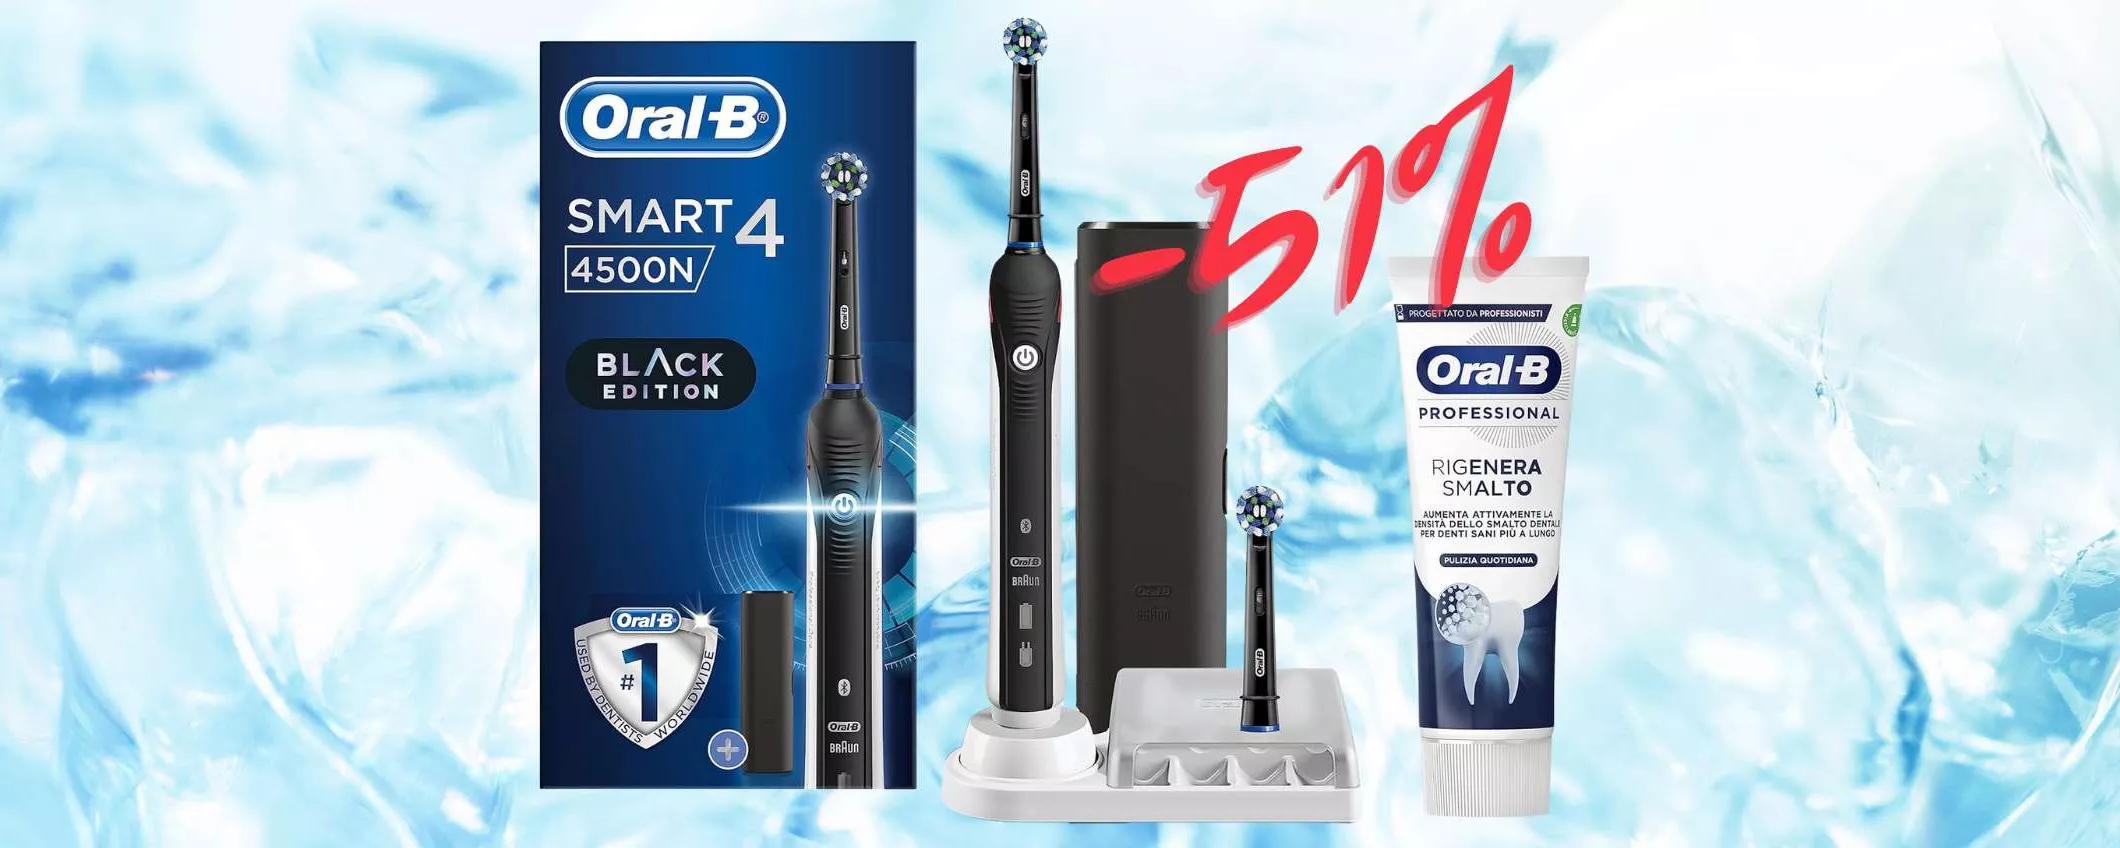 OFFERTA A TEMPO per il MIGLIORE spazzolino elettrico: Oral-B Smart 4